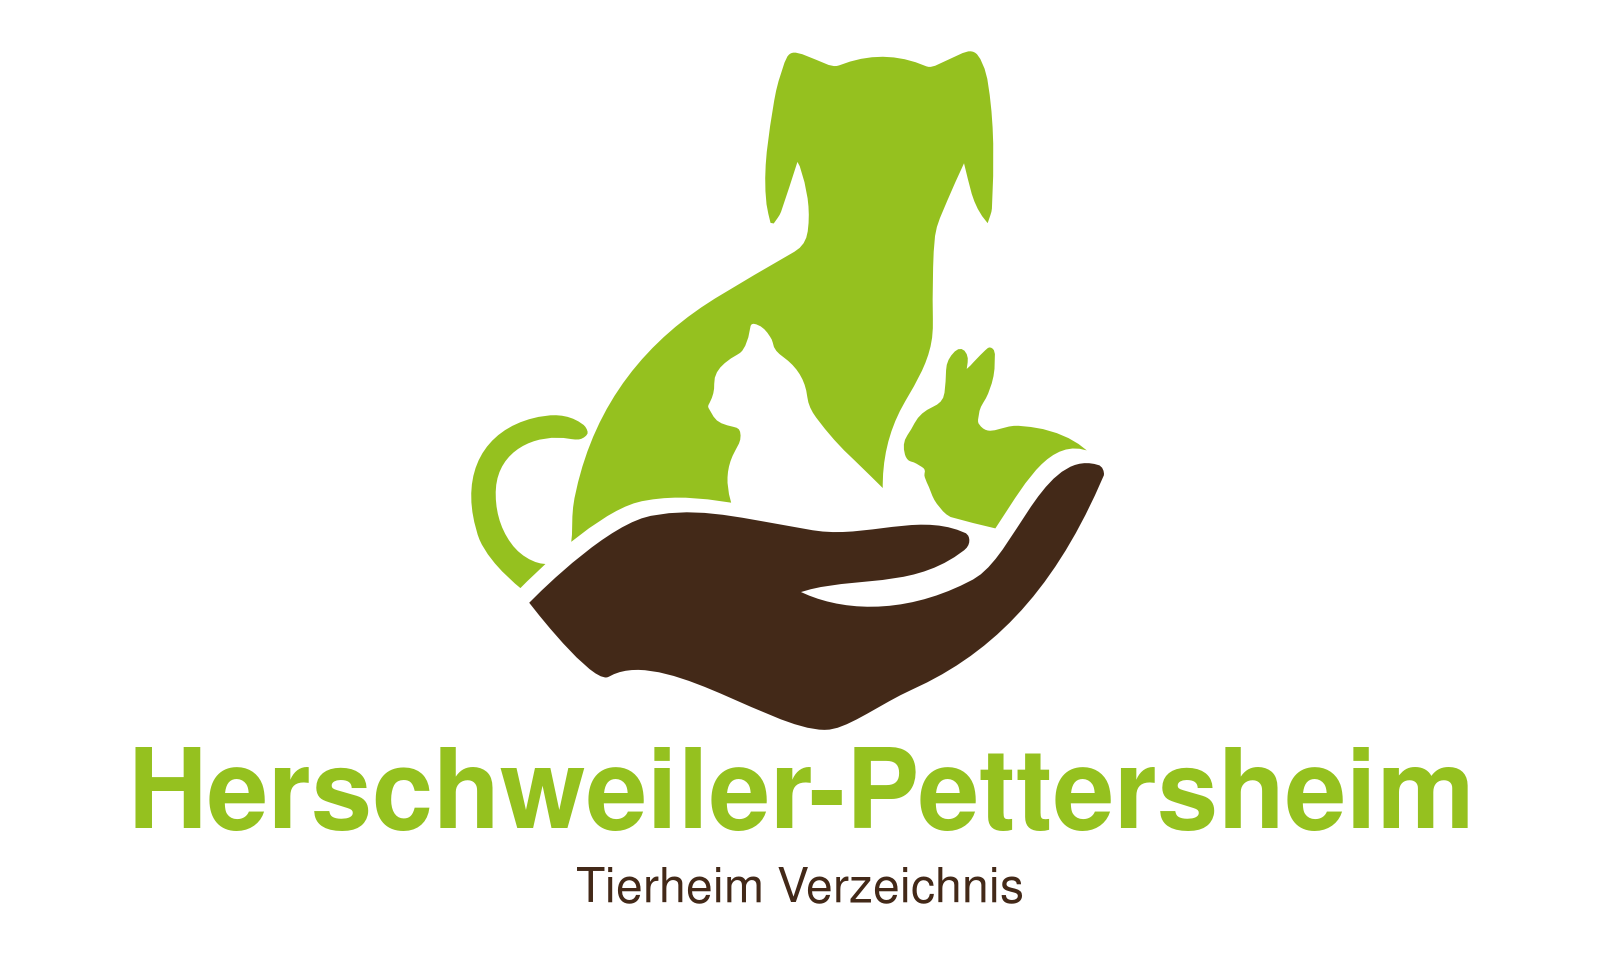 Tierheim Herschweiler-Pettersheim